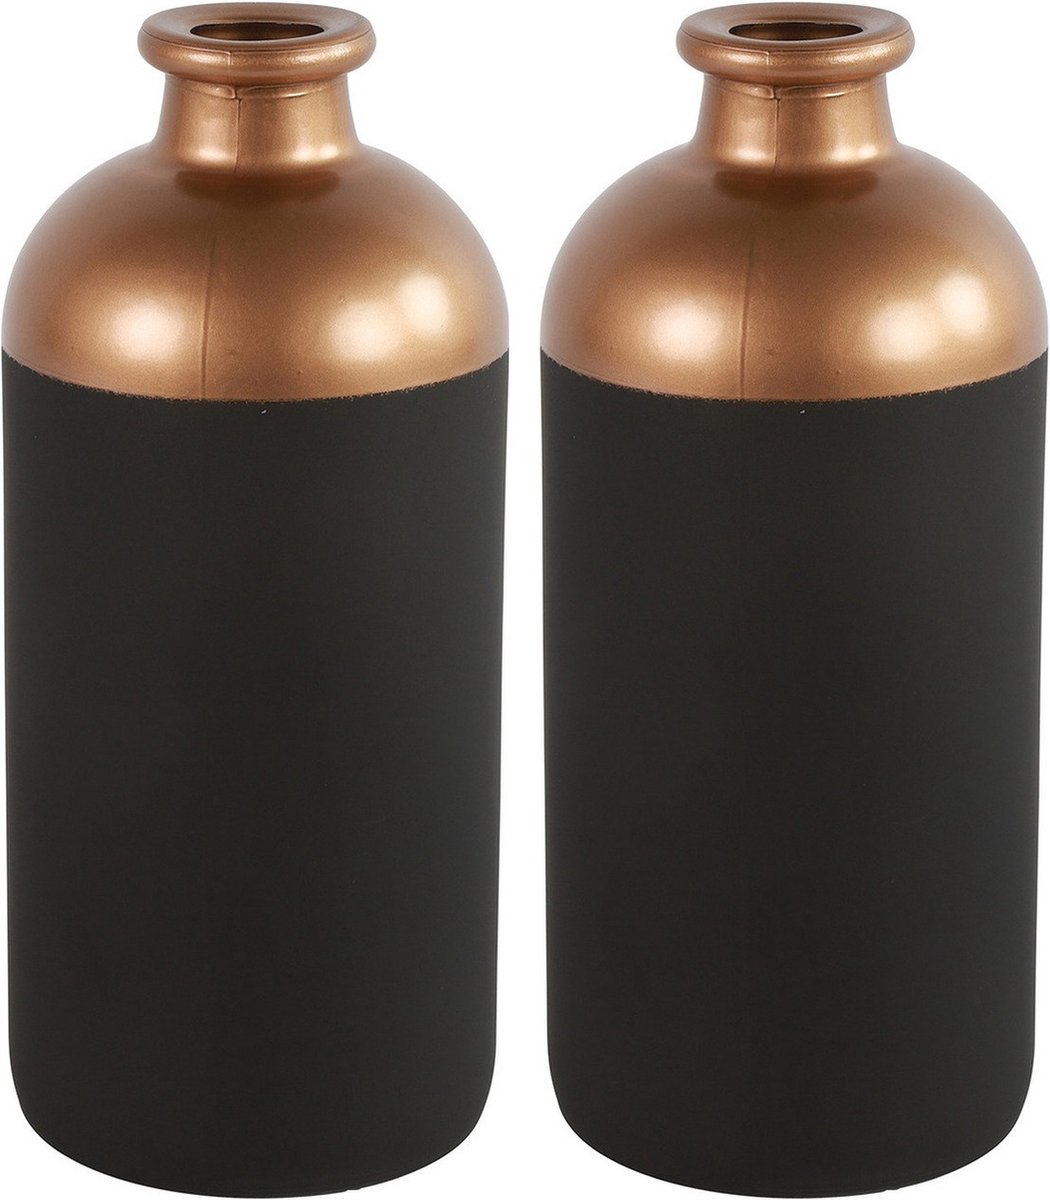 Countryfield Bloemen/deco vaas - 2x/koper - glas - luxe fles vorm - D11 x H25 cm - Vazen - Zwart